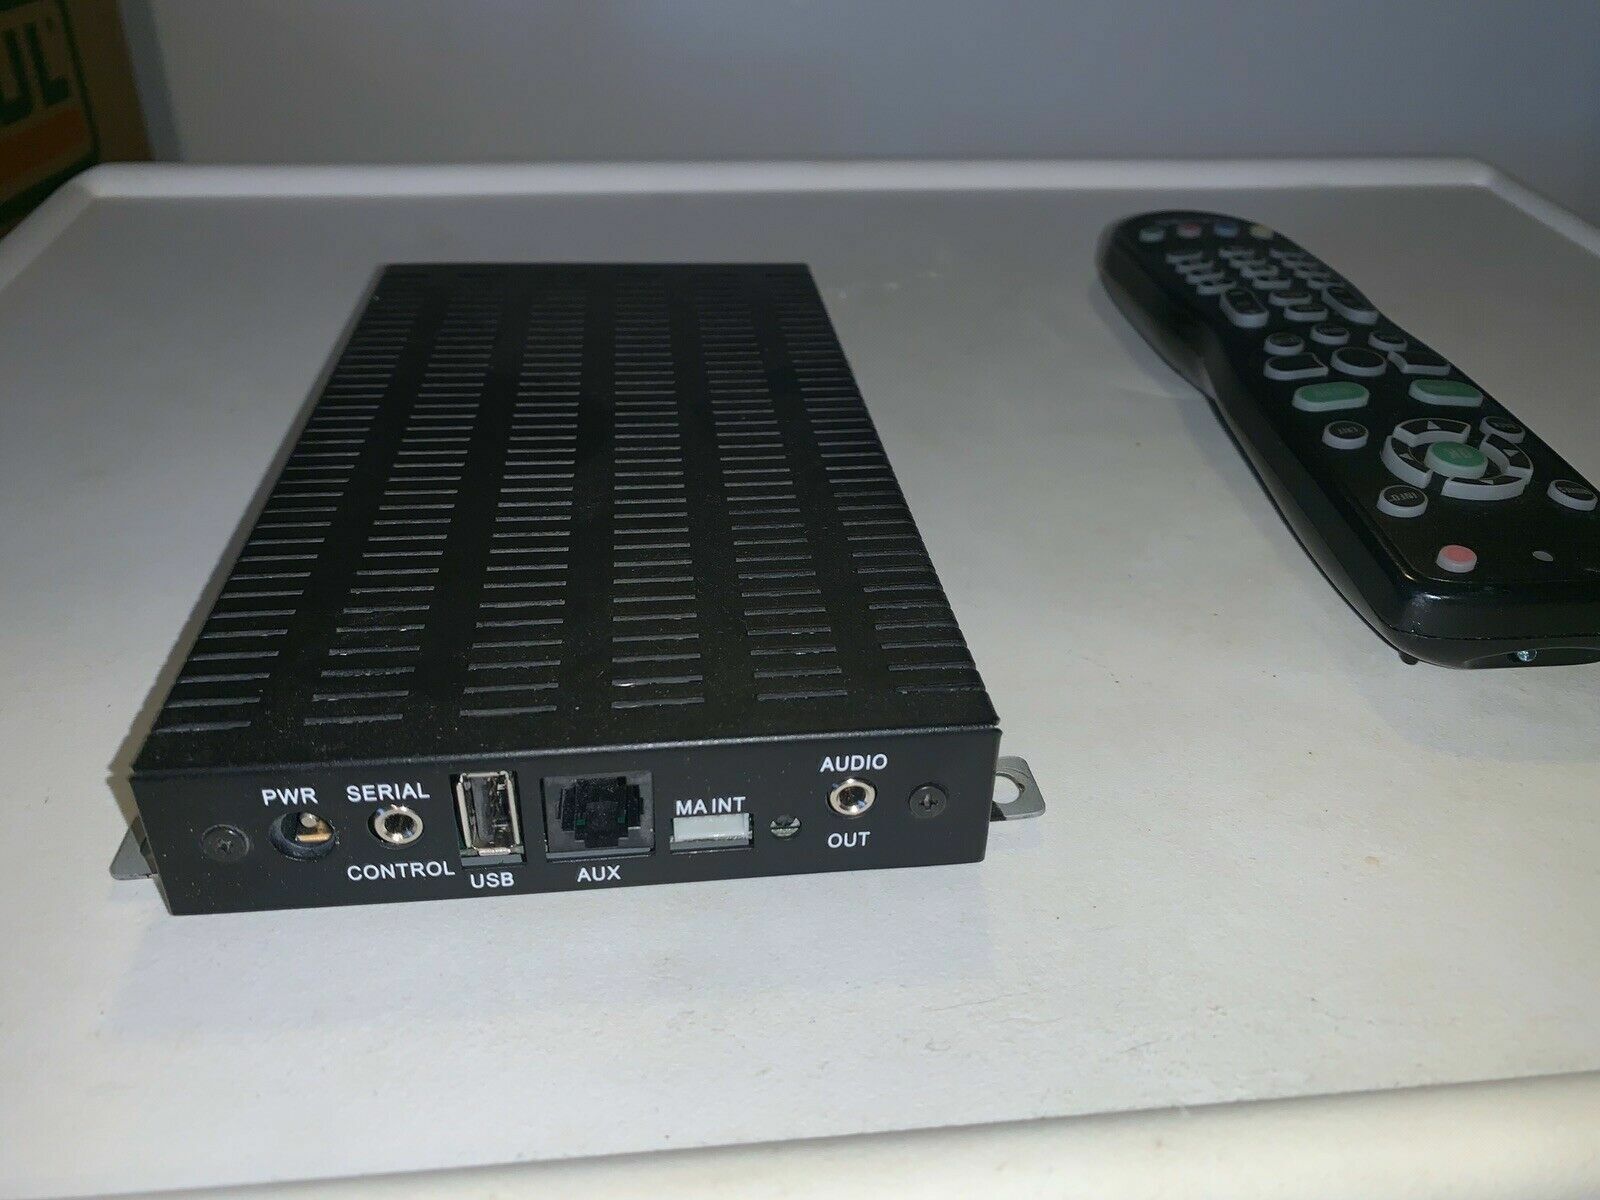 5 Sets: Enseo HD3000Q + Remotes TV Cable HDMI Top Boxs GuestTEK 120-6030-007C Enseo 120-6030-007C